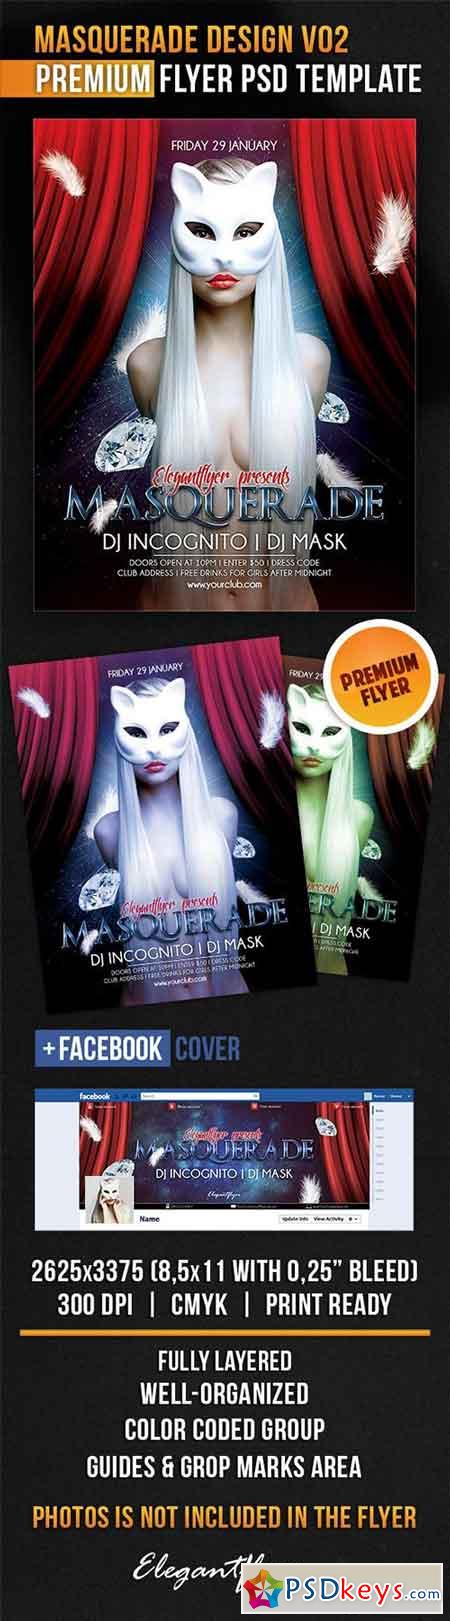 Masquerade Design V02 Flyer PSD Template + Facebook Cover